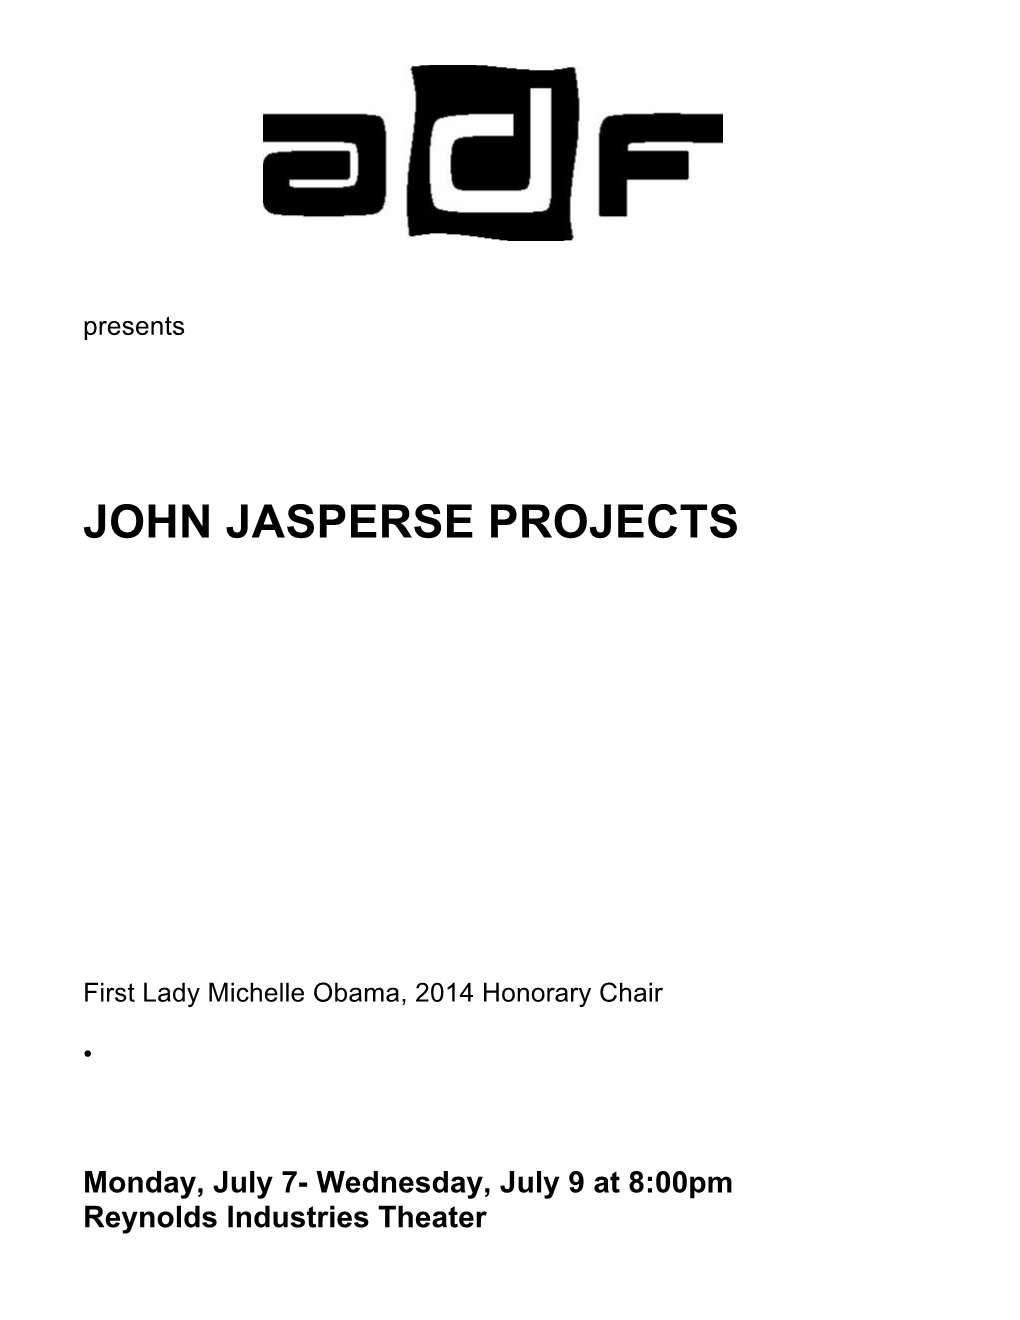 John Jasperse Projects